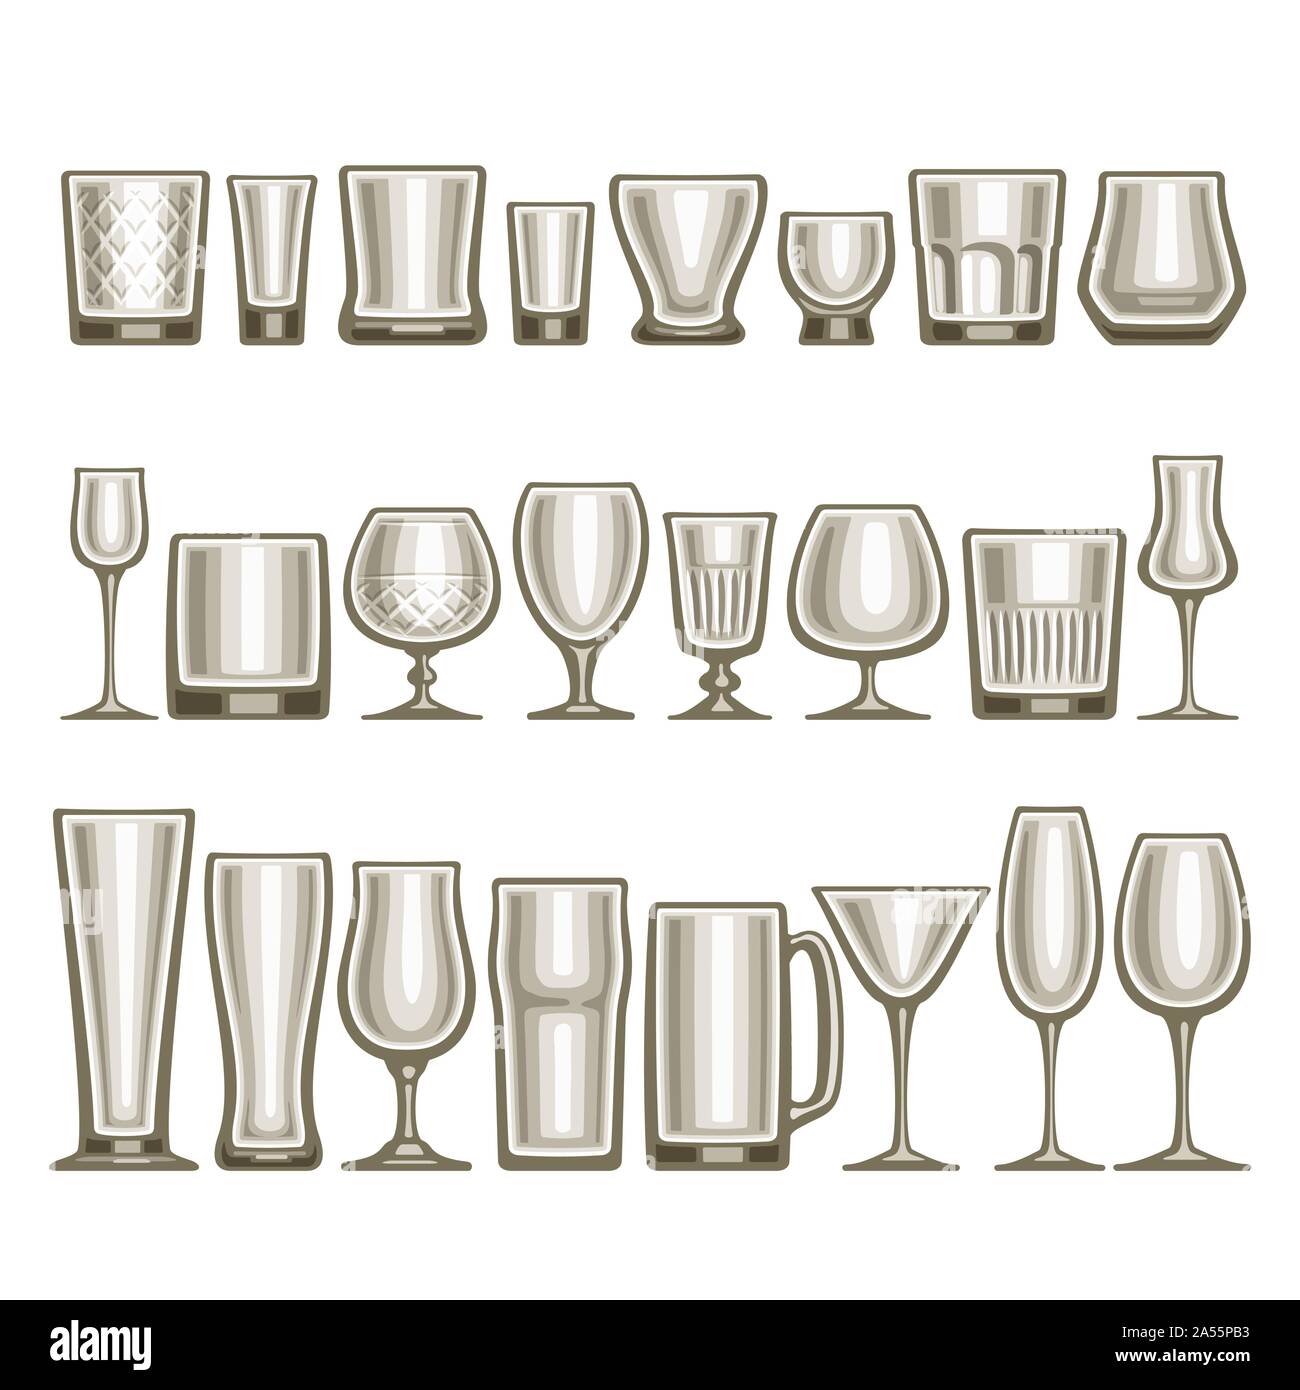 Vektor einrichten verschiedener Gläser, 24 leere Glas Tassen verschiedene Form für Alkohol Getränke und Cocktails, Sammlung von grau glänzend Mock up Icons für Bar Stock Vektor